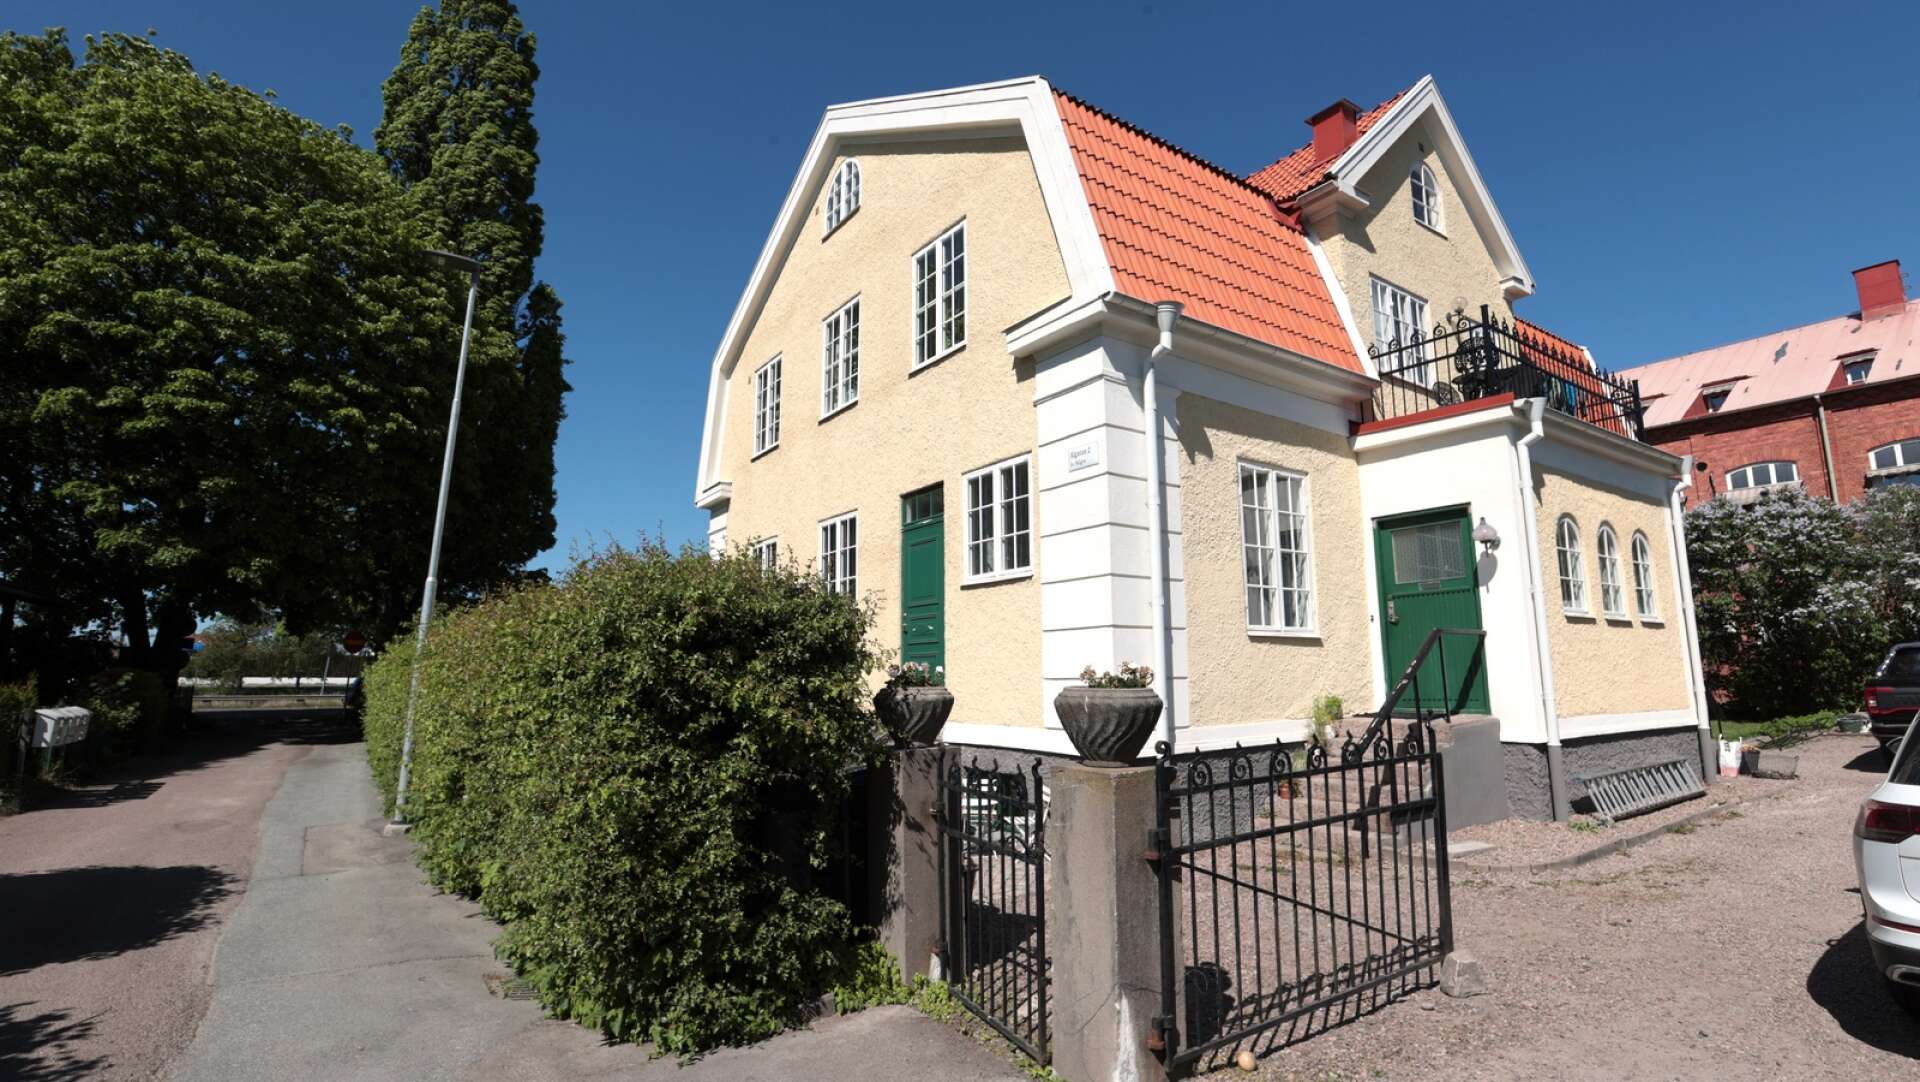 Huset är delat i två och familjen Nyholm disponerar undervåningen själva och hyr ut övervåningen.